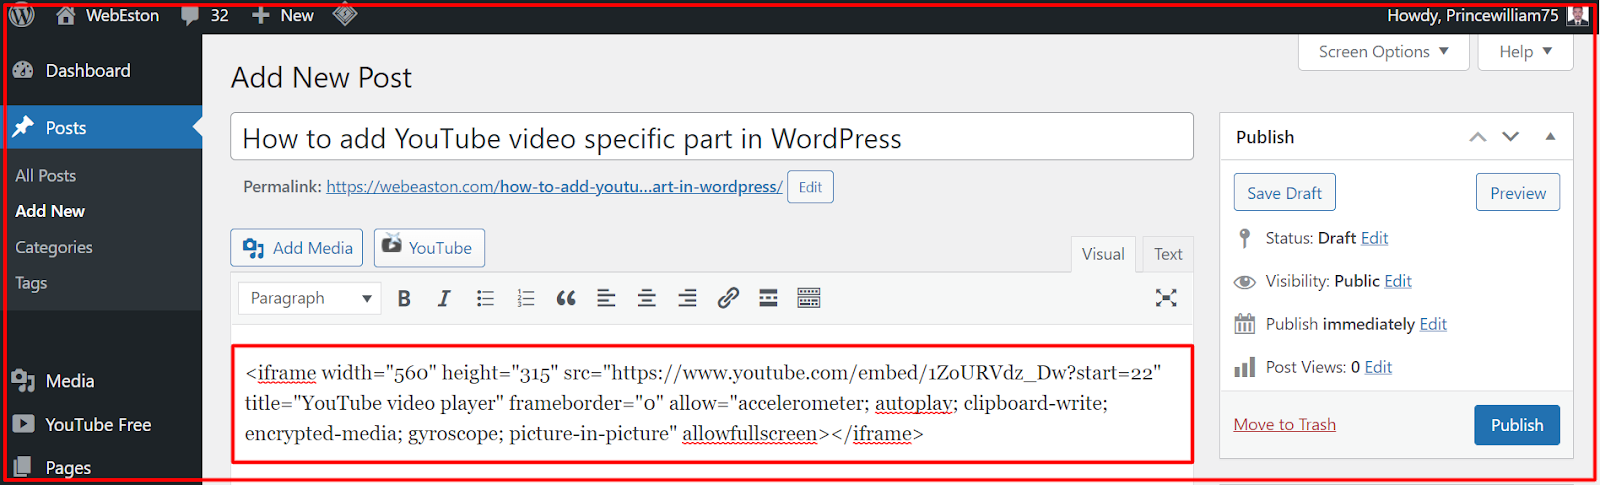 YouTube videos embed code paste in wordpress website